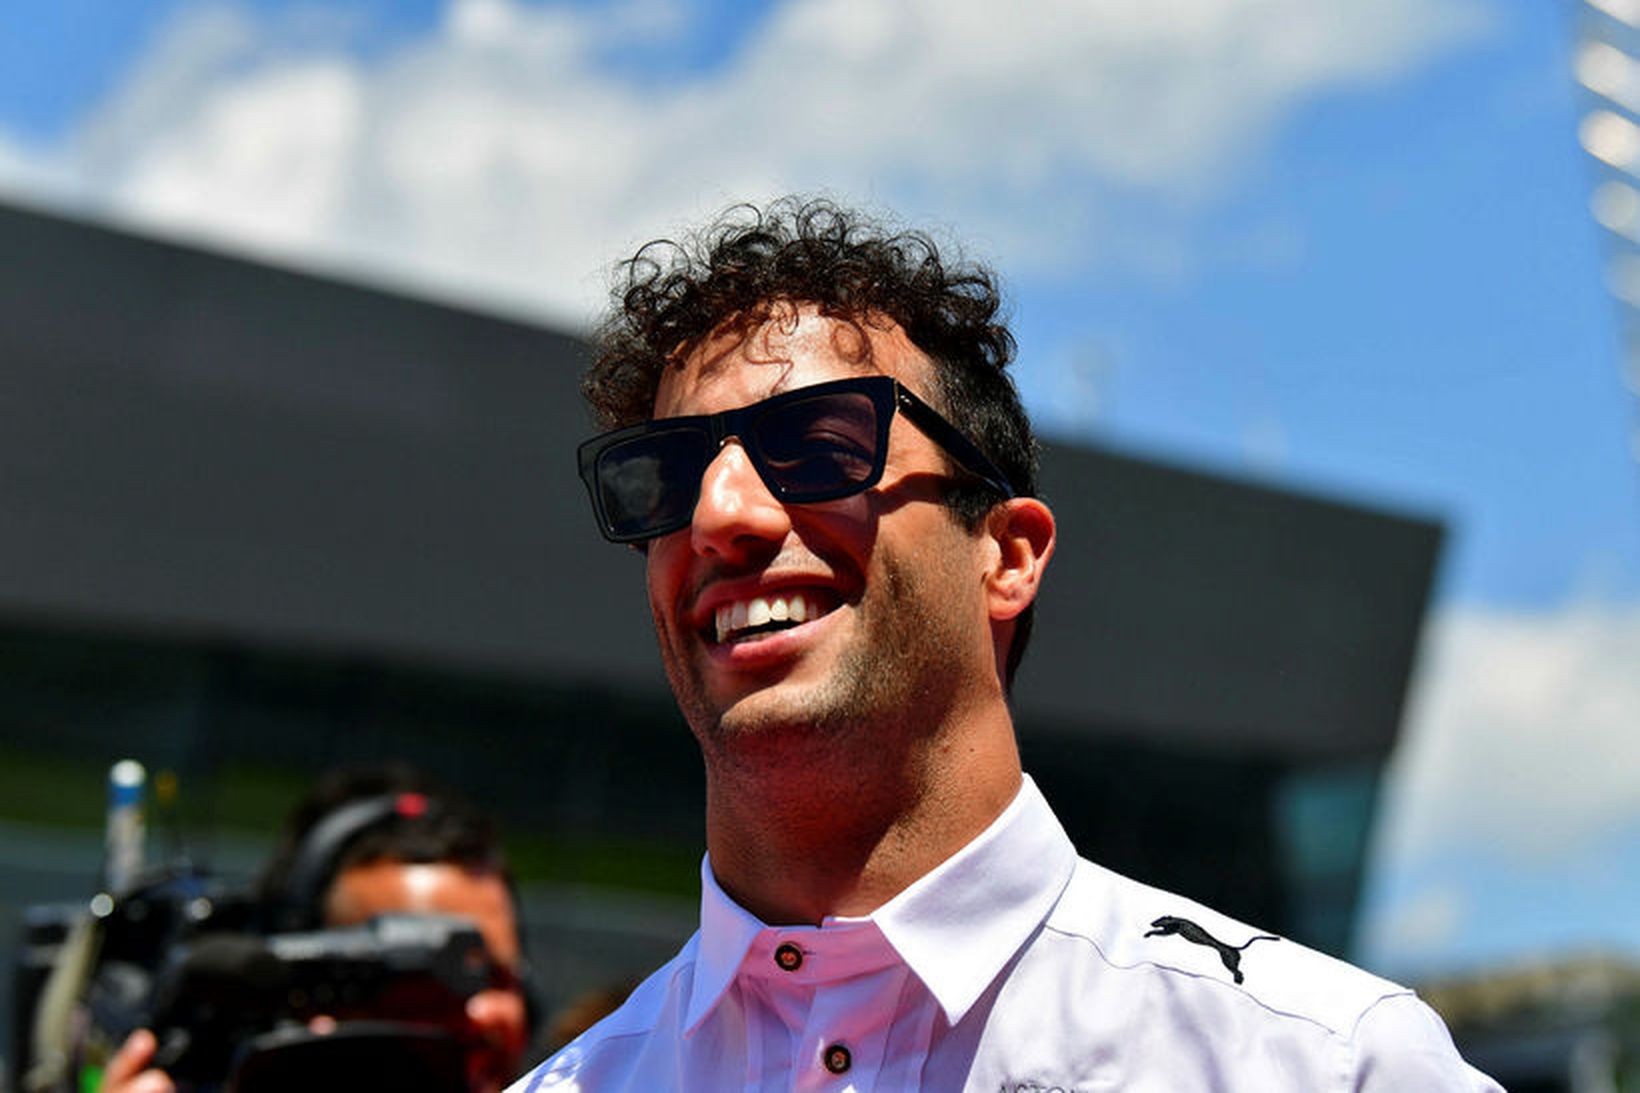 Daniel Ricciardo með vörumerki sitt, brosið mikla.